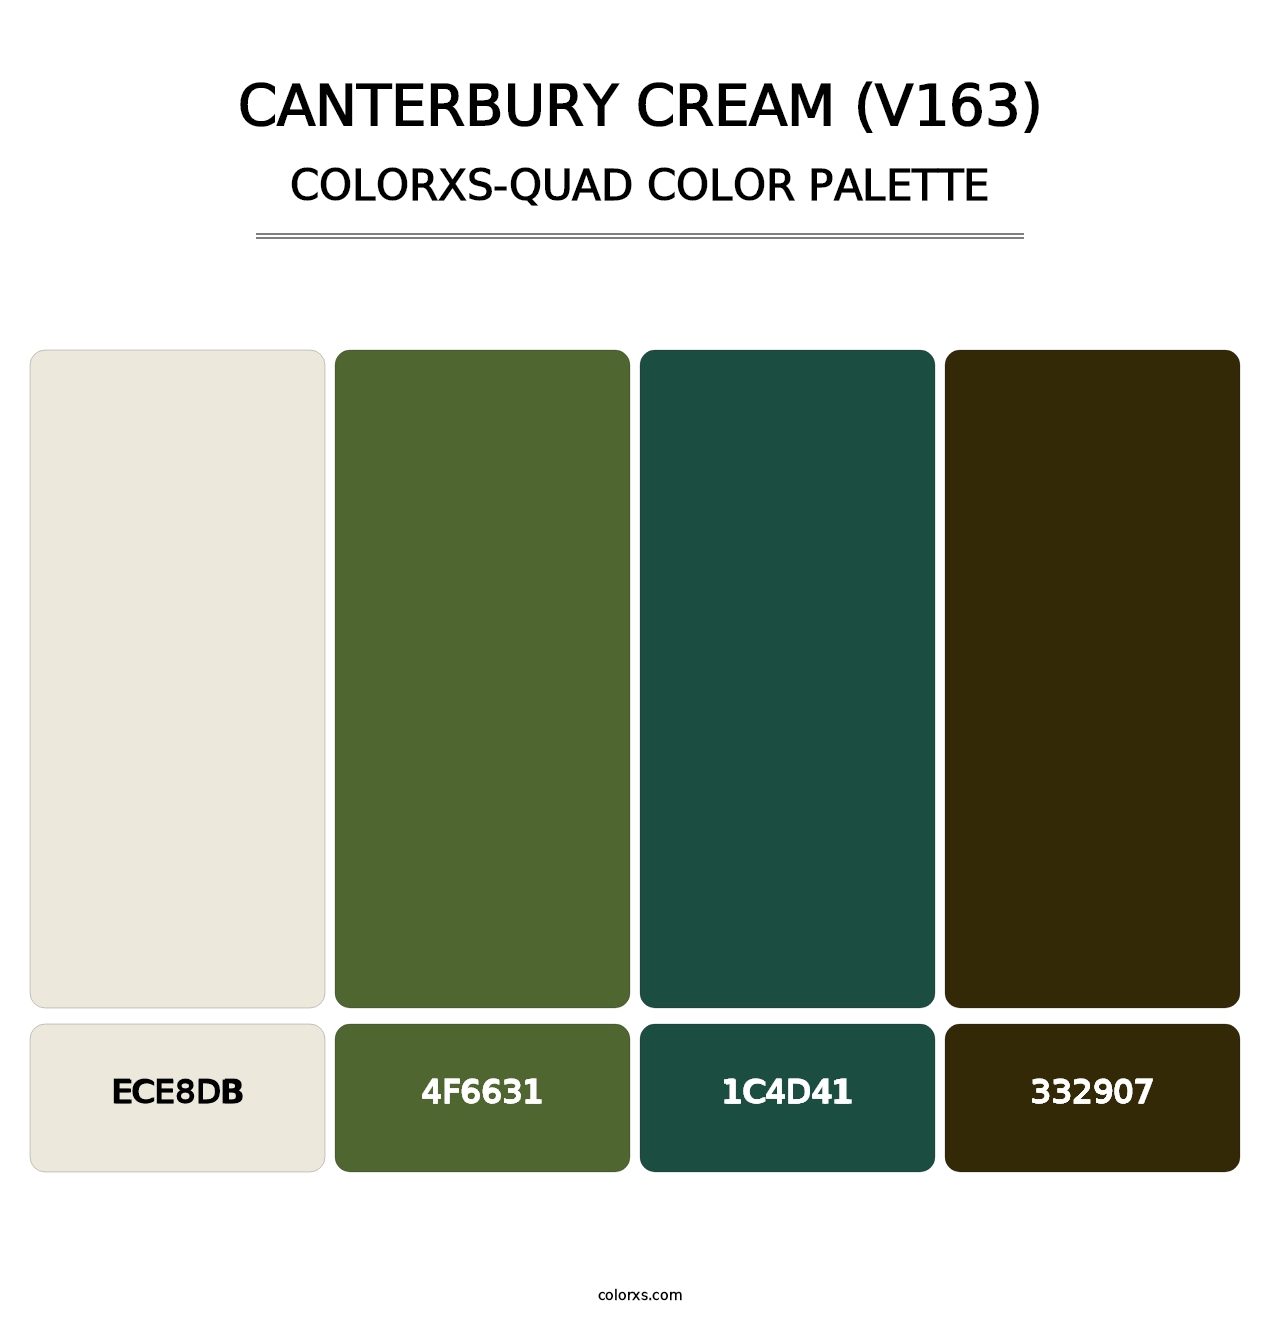 Canterbury Cream (V163) - Colorxs Quad Palette